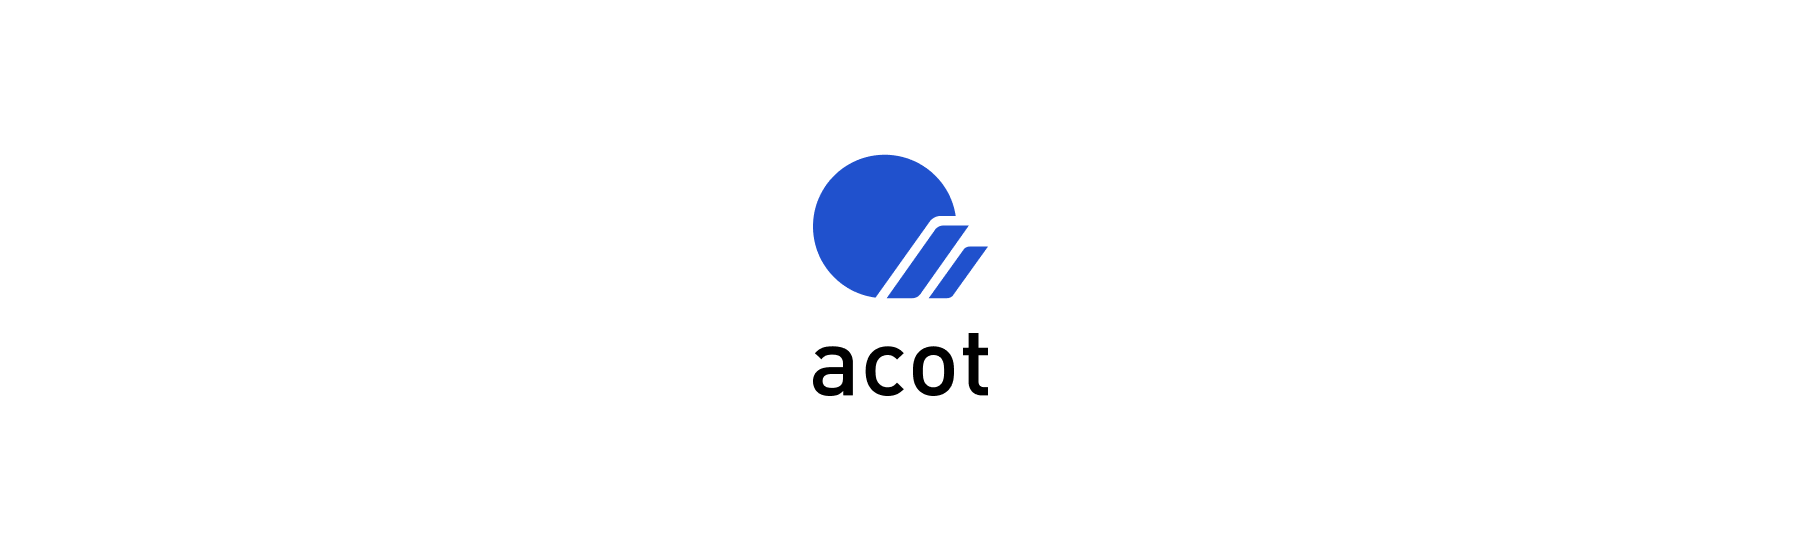 acot